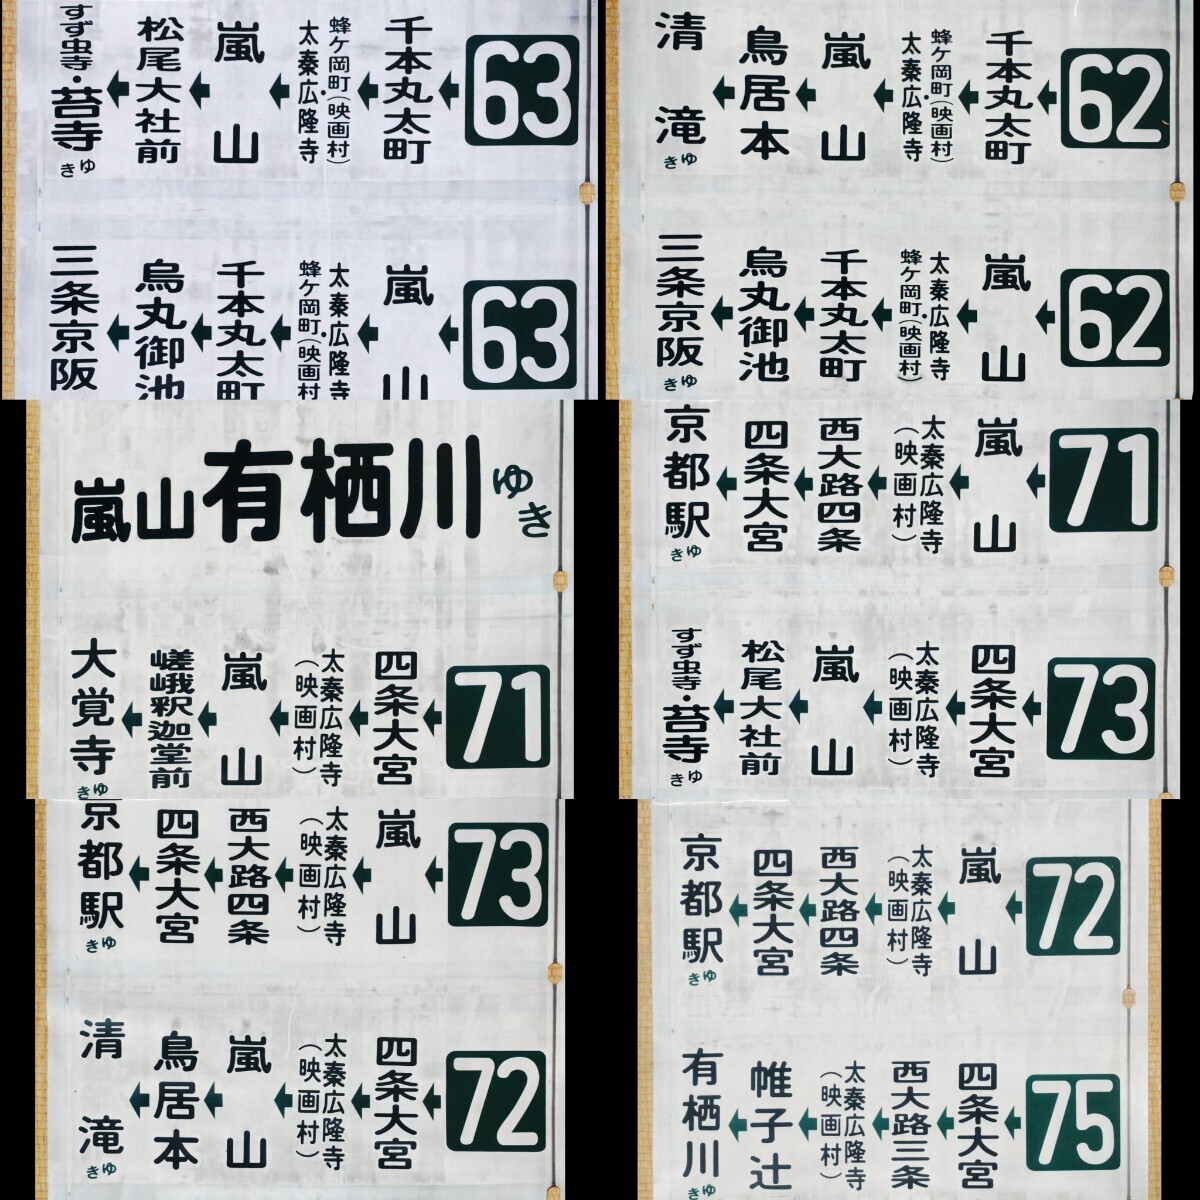 京都バス 嵐山営業所 側面方向幕52コマ 旧書体 1990年代〜2000年頃使用 138記入あり 上部切り取り箇所あり 現状ジャンク品扱いの画像5